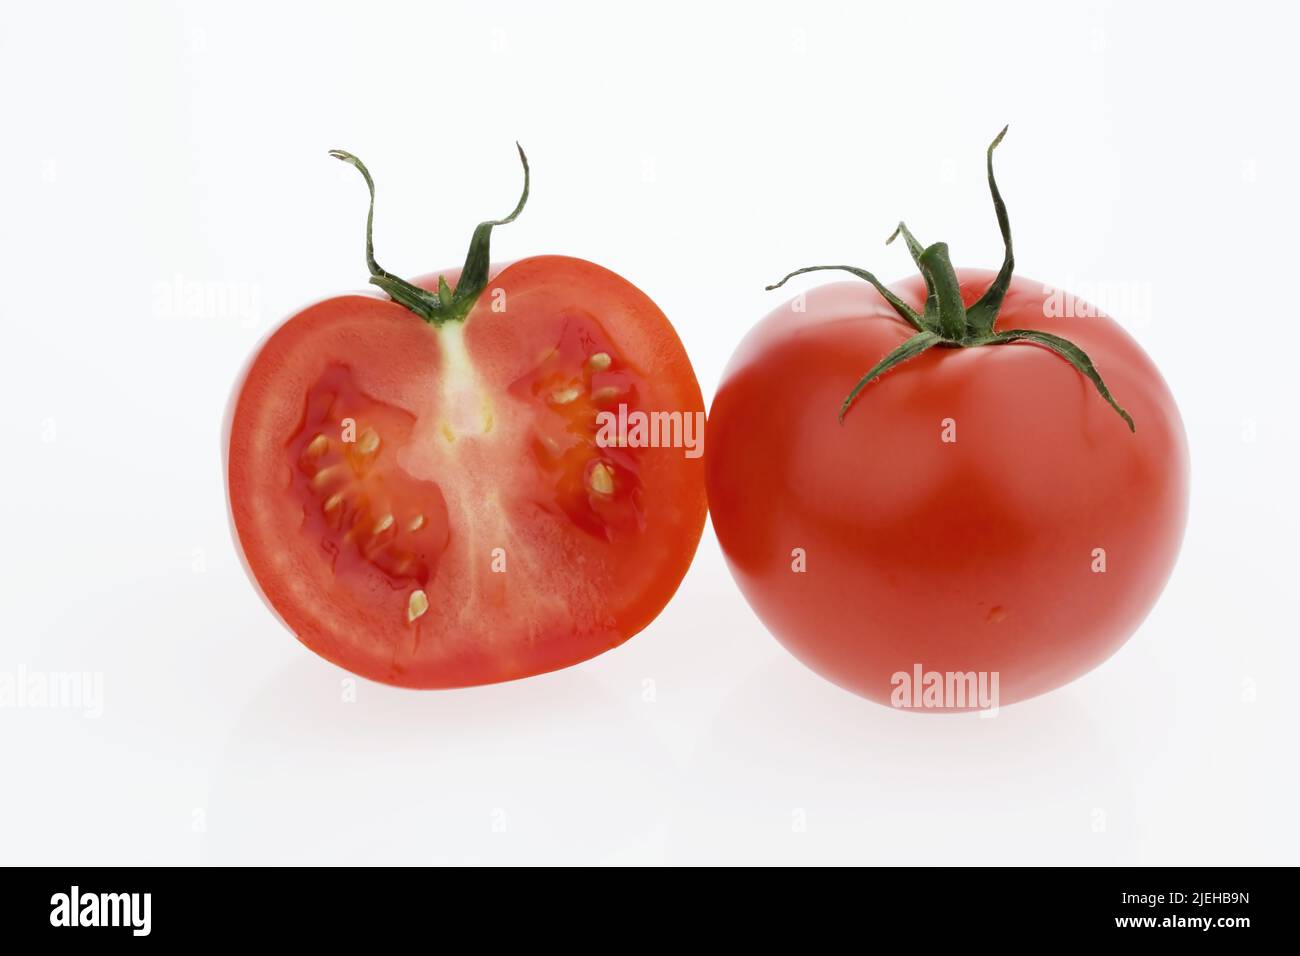 Zwei Tomaten liegt auf einem weissen Hintergrund. Frisches Gemüse zu jeder Saison Stock Photo